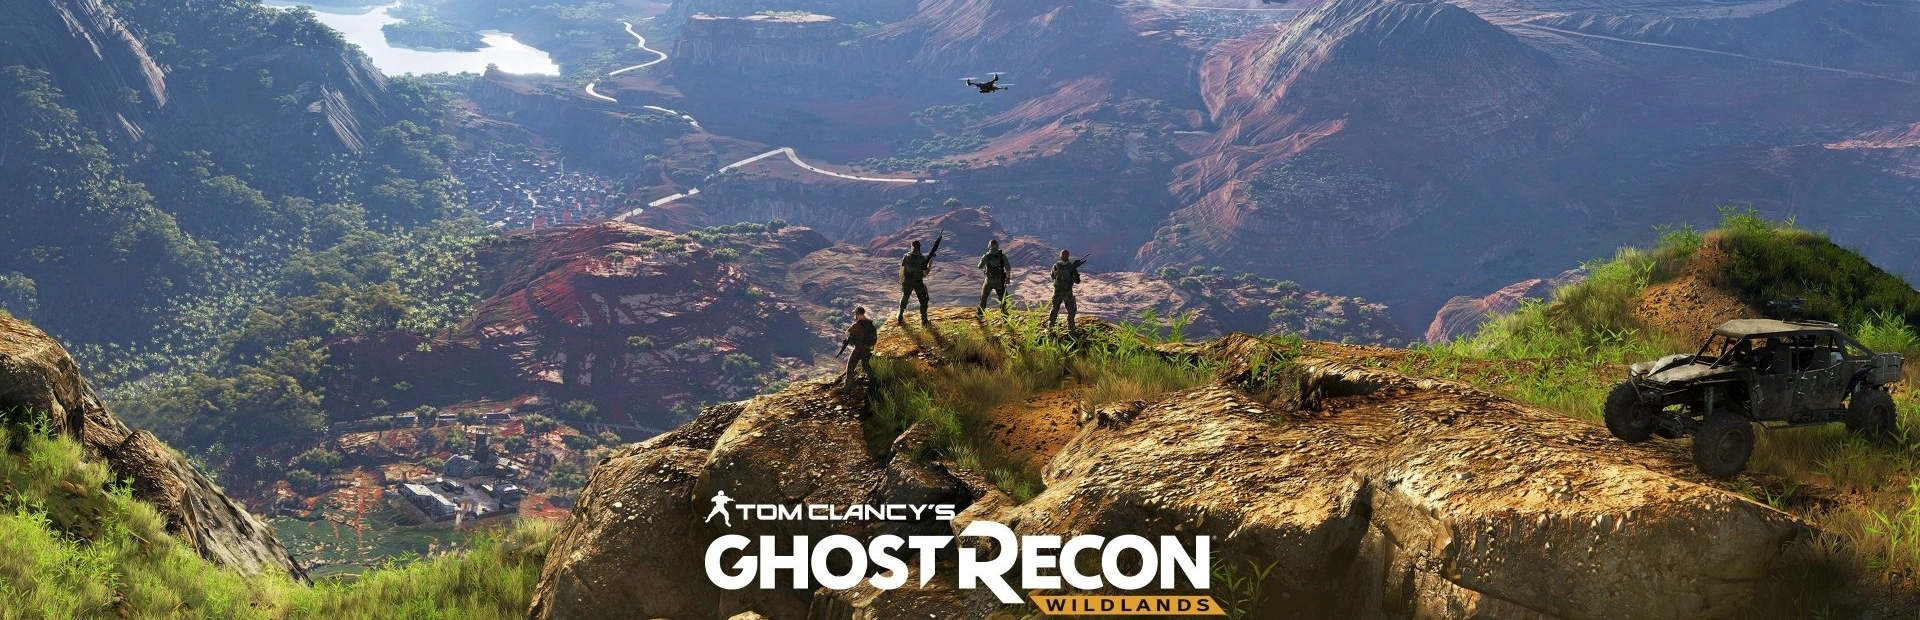 دانلود بازی Tom Clancy's Ghost Recon برای PC | گیمباتو